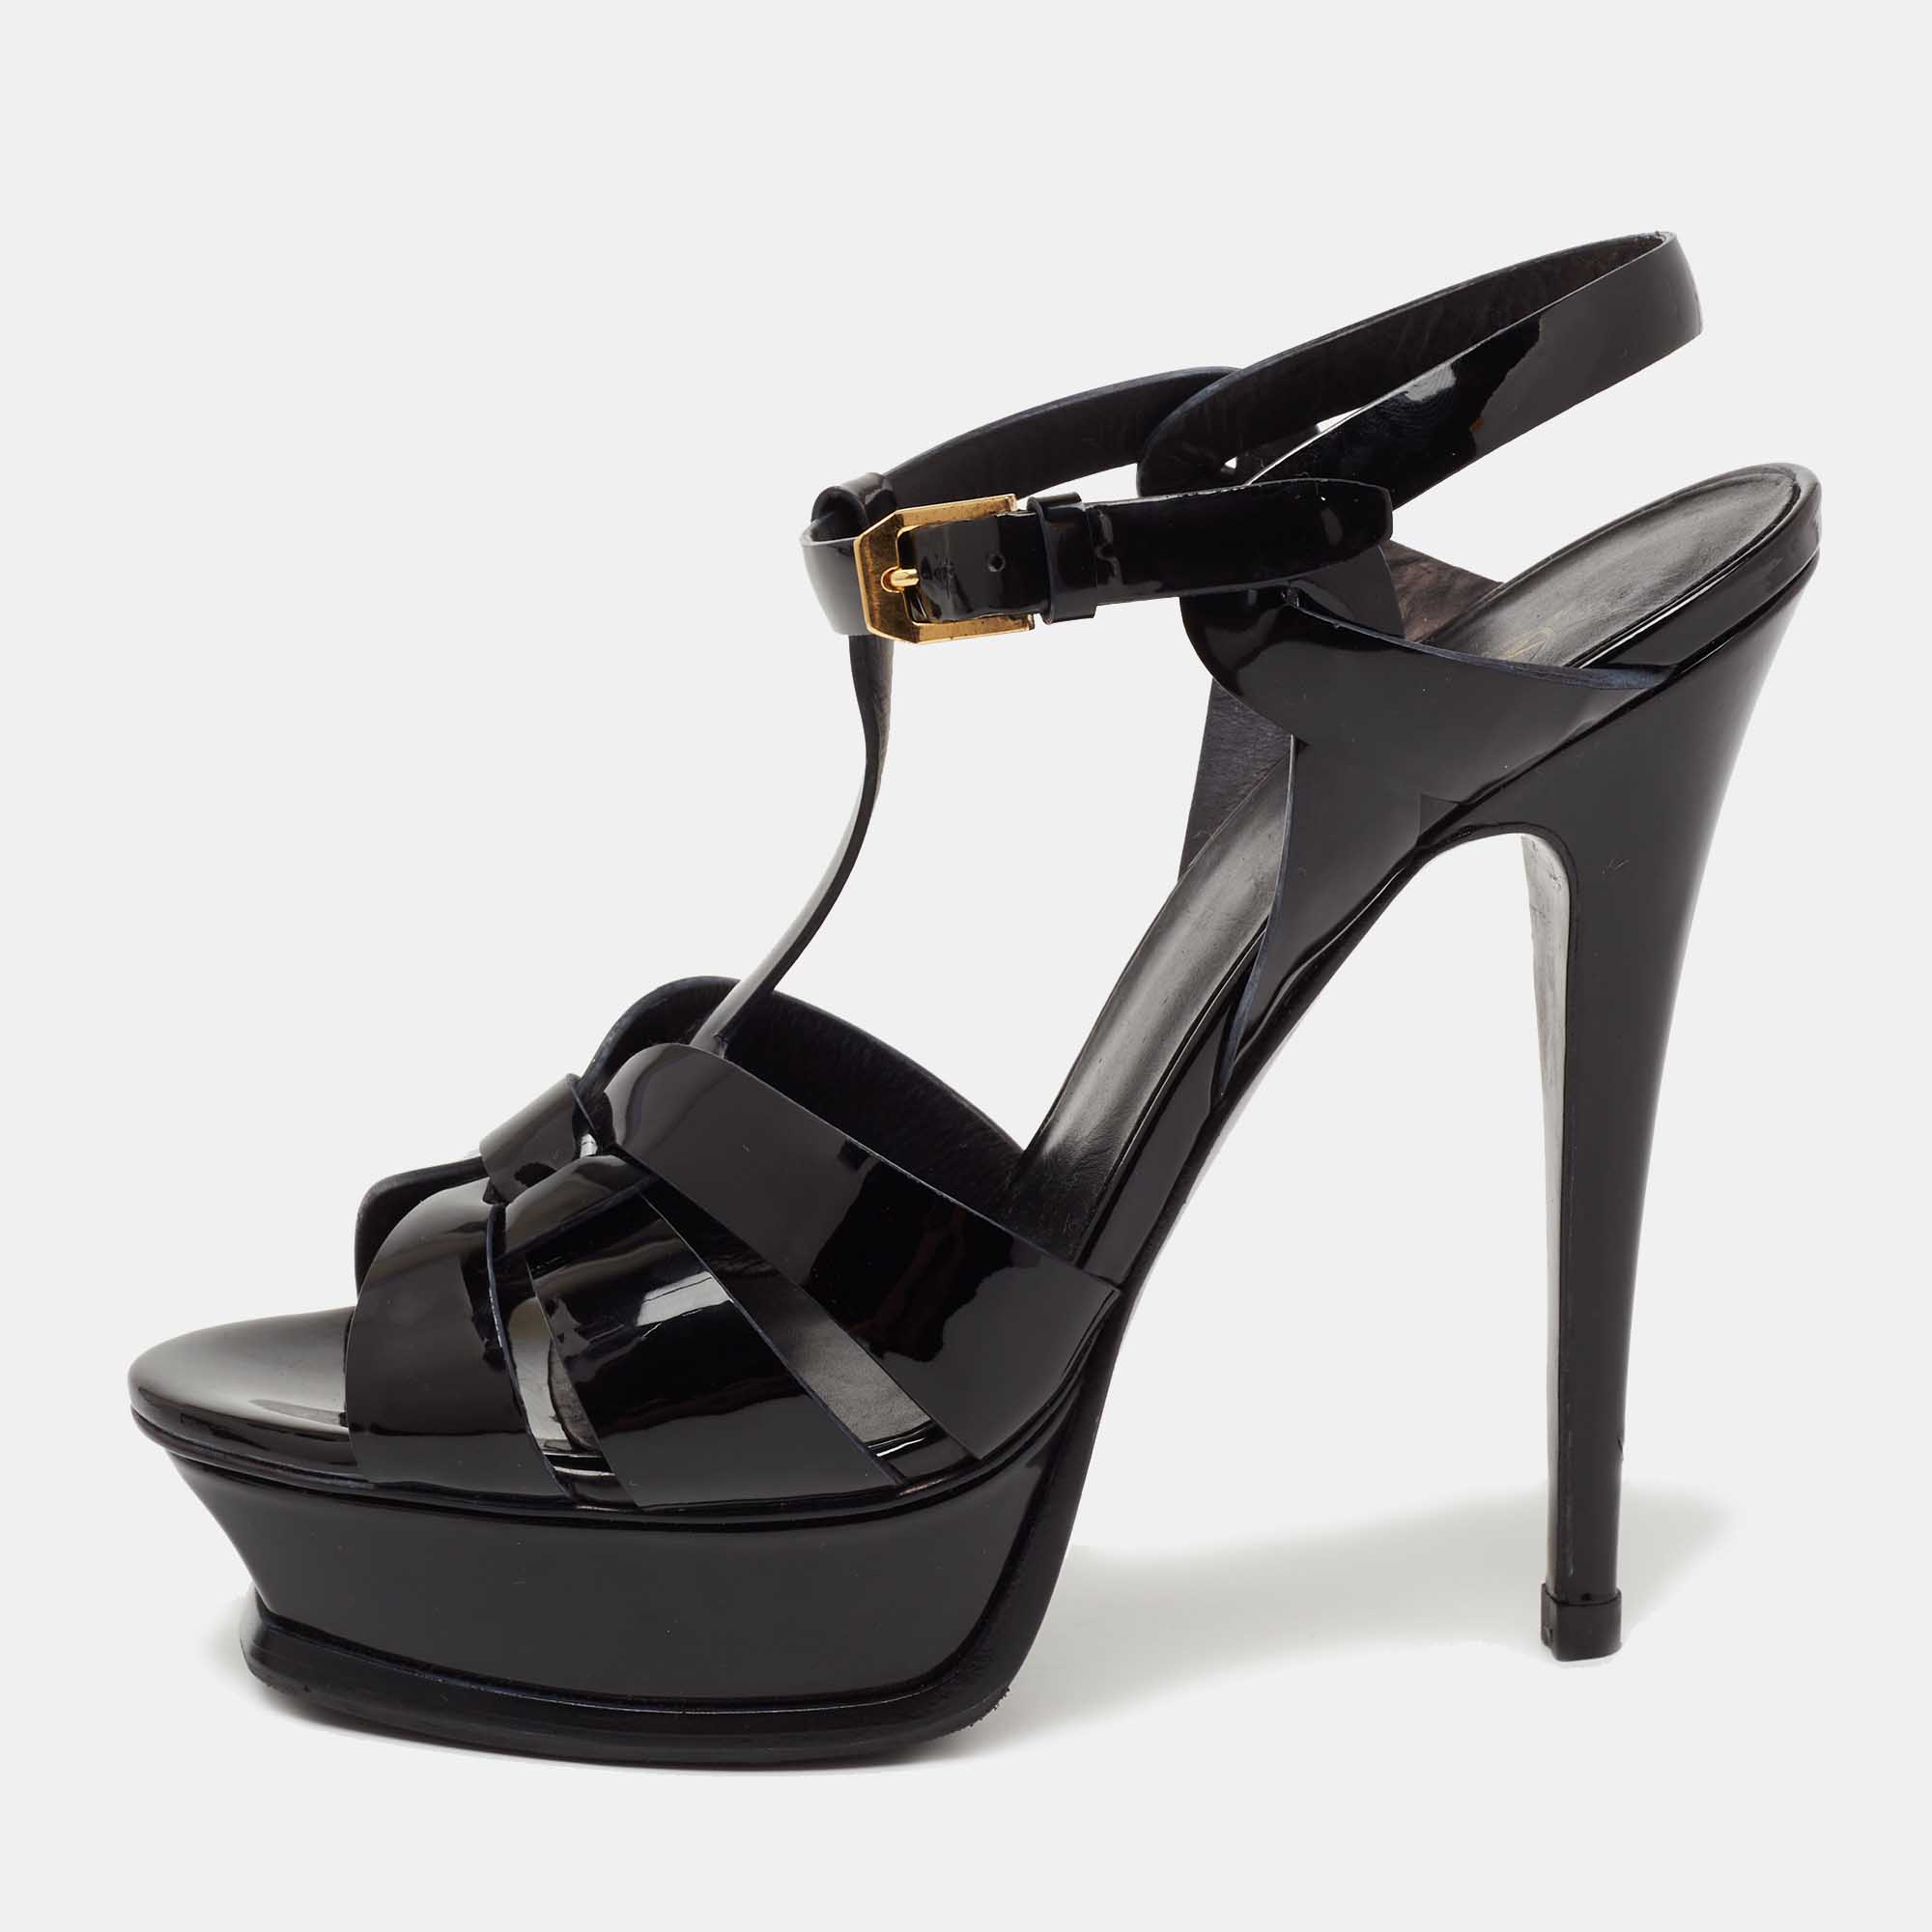 Saint Laurent Black Patent Leather Tribute Platform Ankle Strap Sandals Size 38